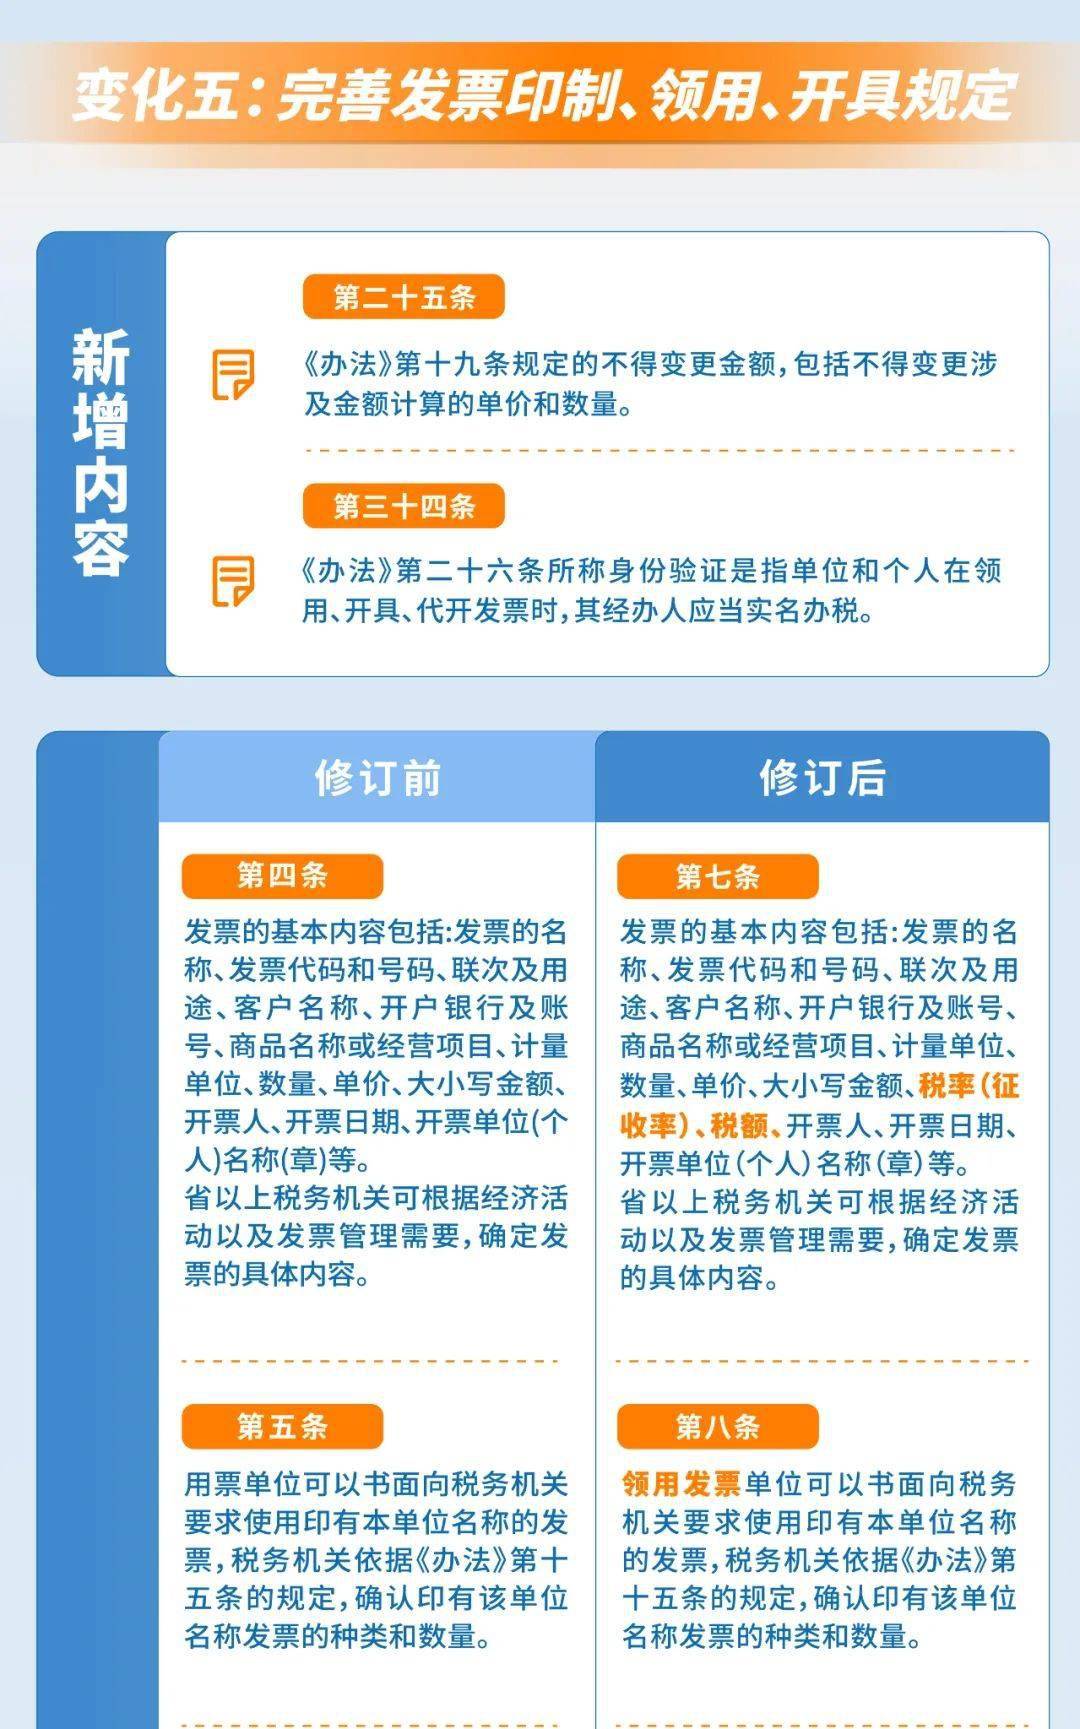 来源:国家税务总局无锡市税务局审核:江苏省税务局征管和科技发展处